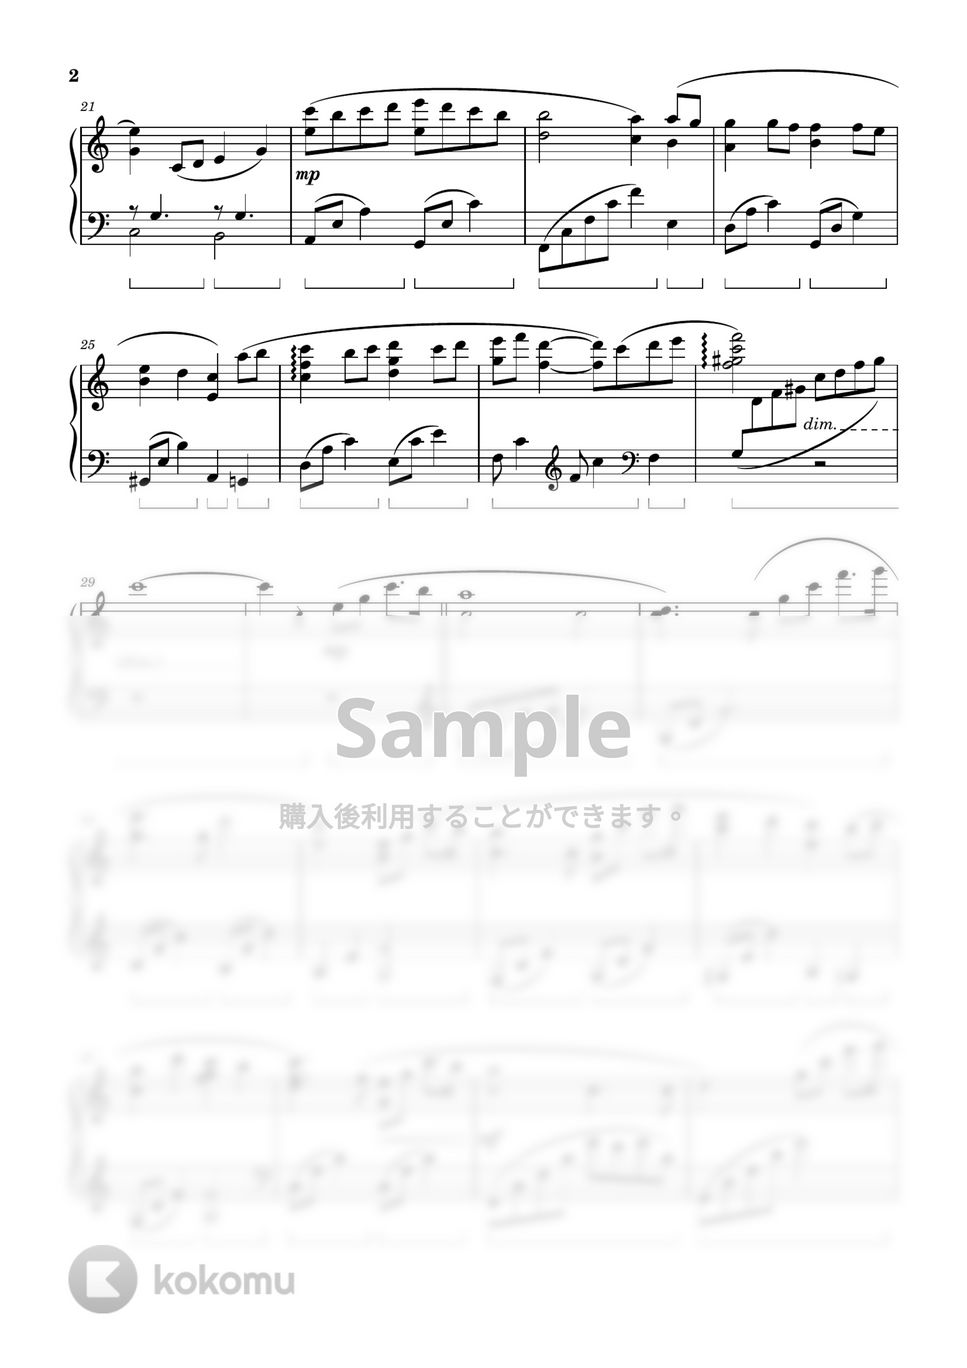 ドラマ「監察医 朝顔2」 - 監察医 朝顔 2020-2021 (Piano Version) by ちゃんRINA。